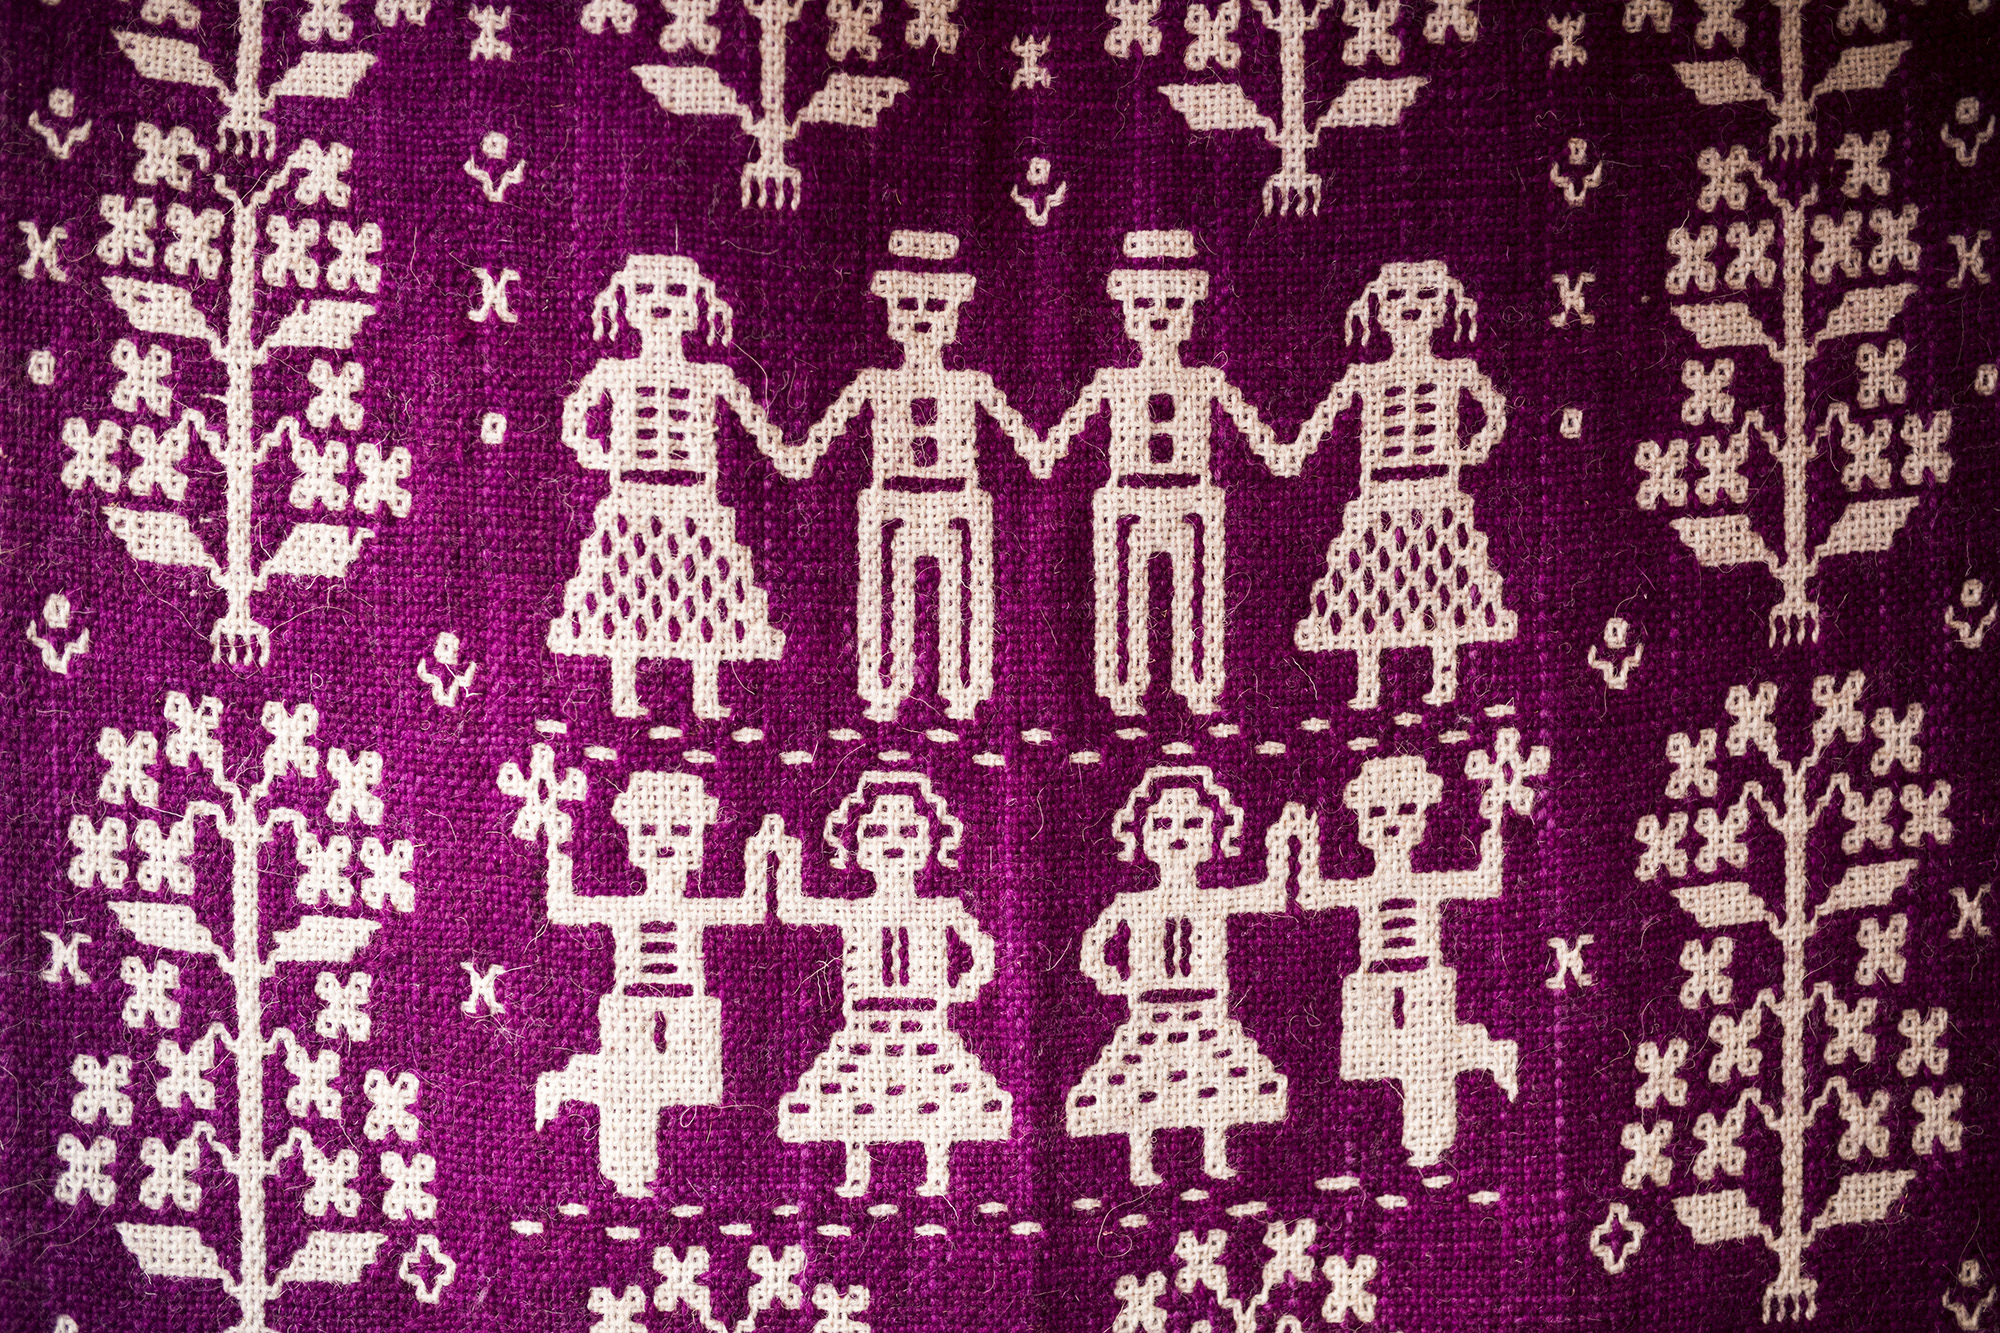 Tkanina dwuosnowowa. Na ciemniejszym różowym tle widać biały wzór przedstawiający schematyczne postaci tańczących ludzi.